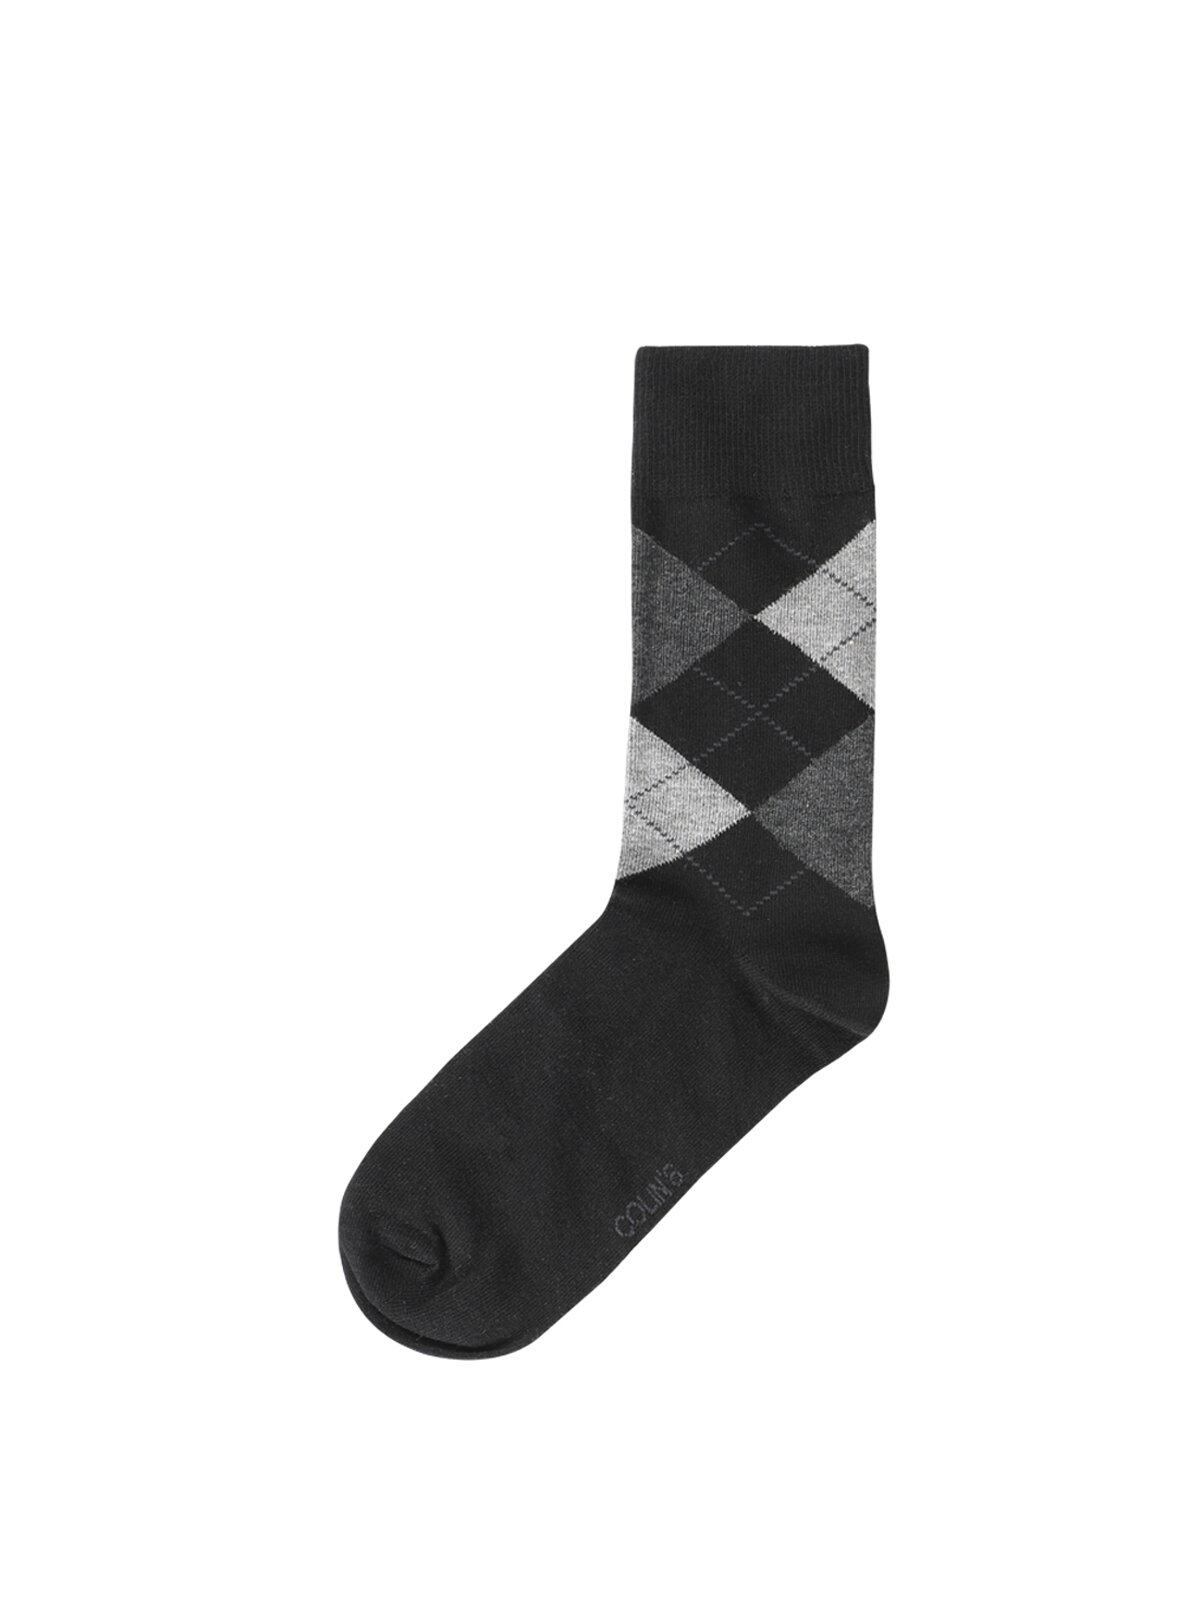 Colins Black Men Socks. 2